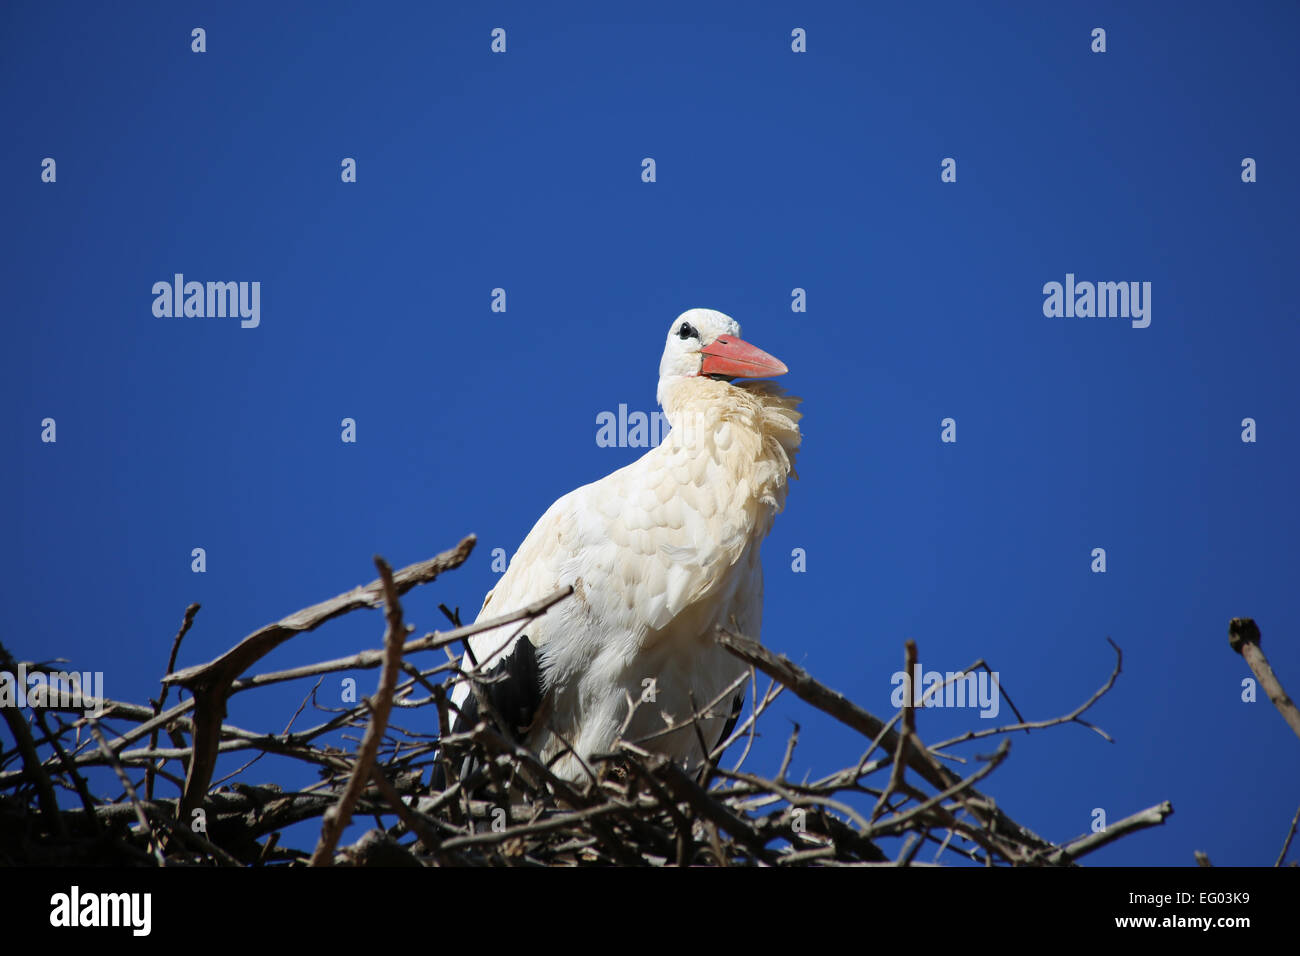 Cicogna europea sul nido con cielo blu sullo sfondo Foto Stock